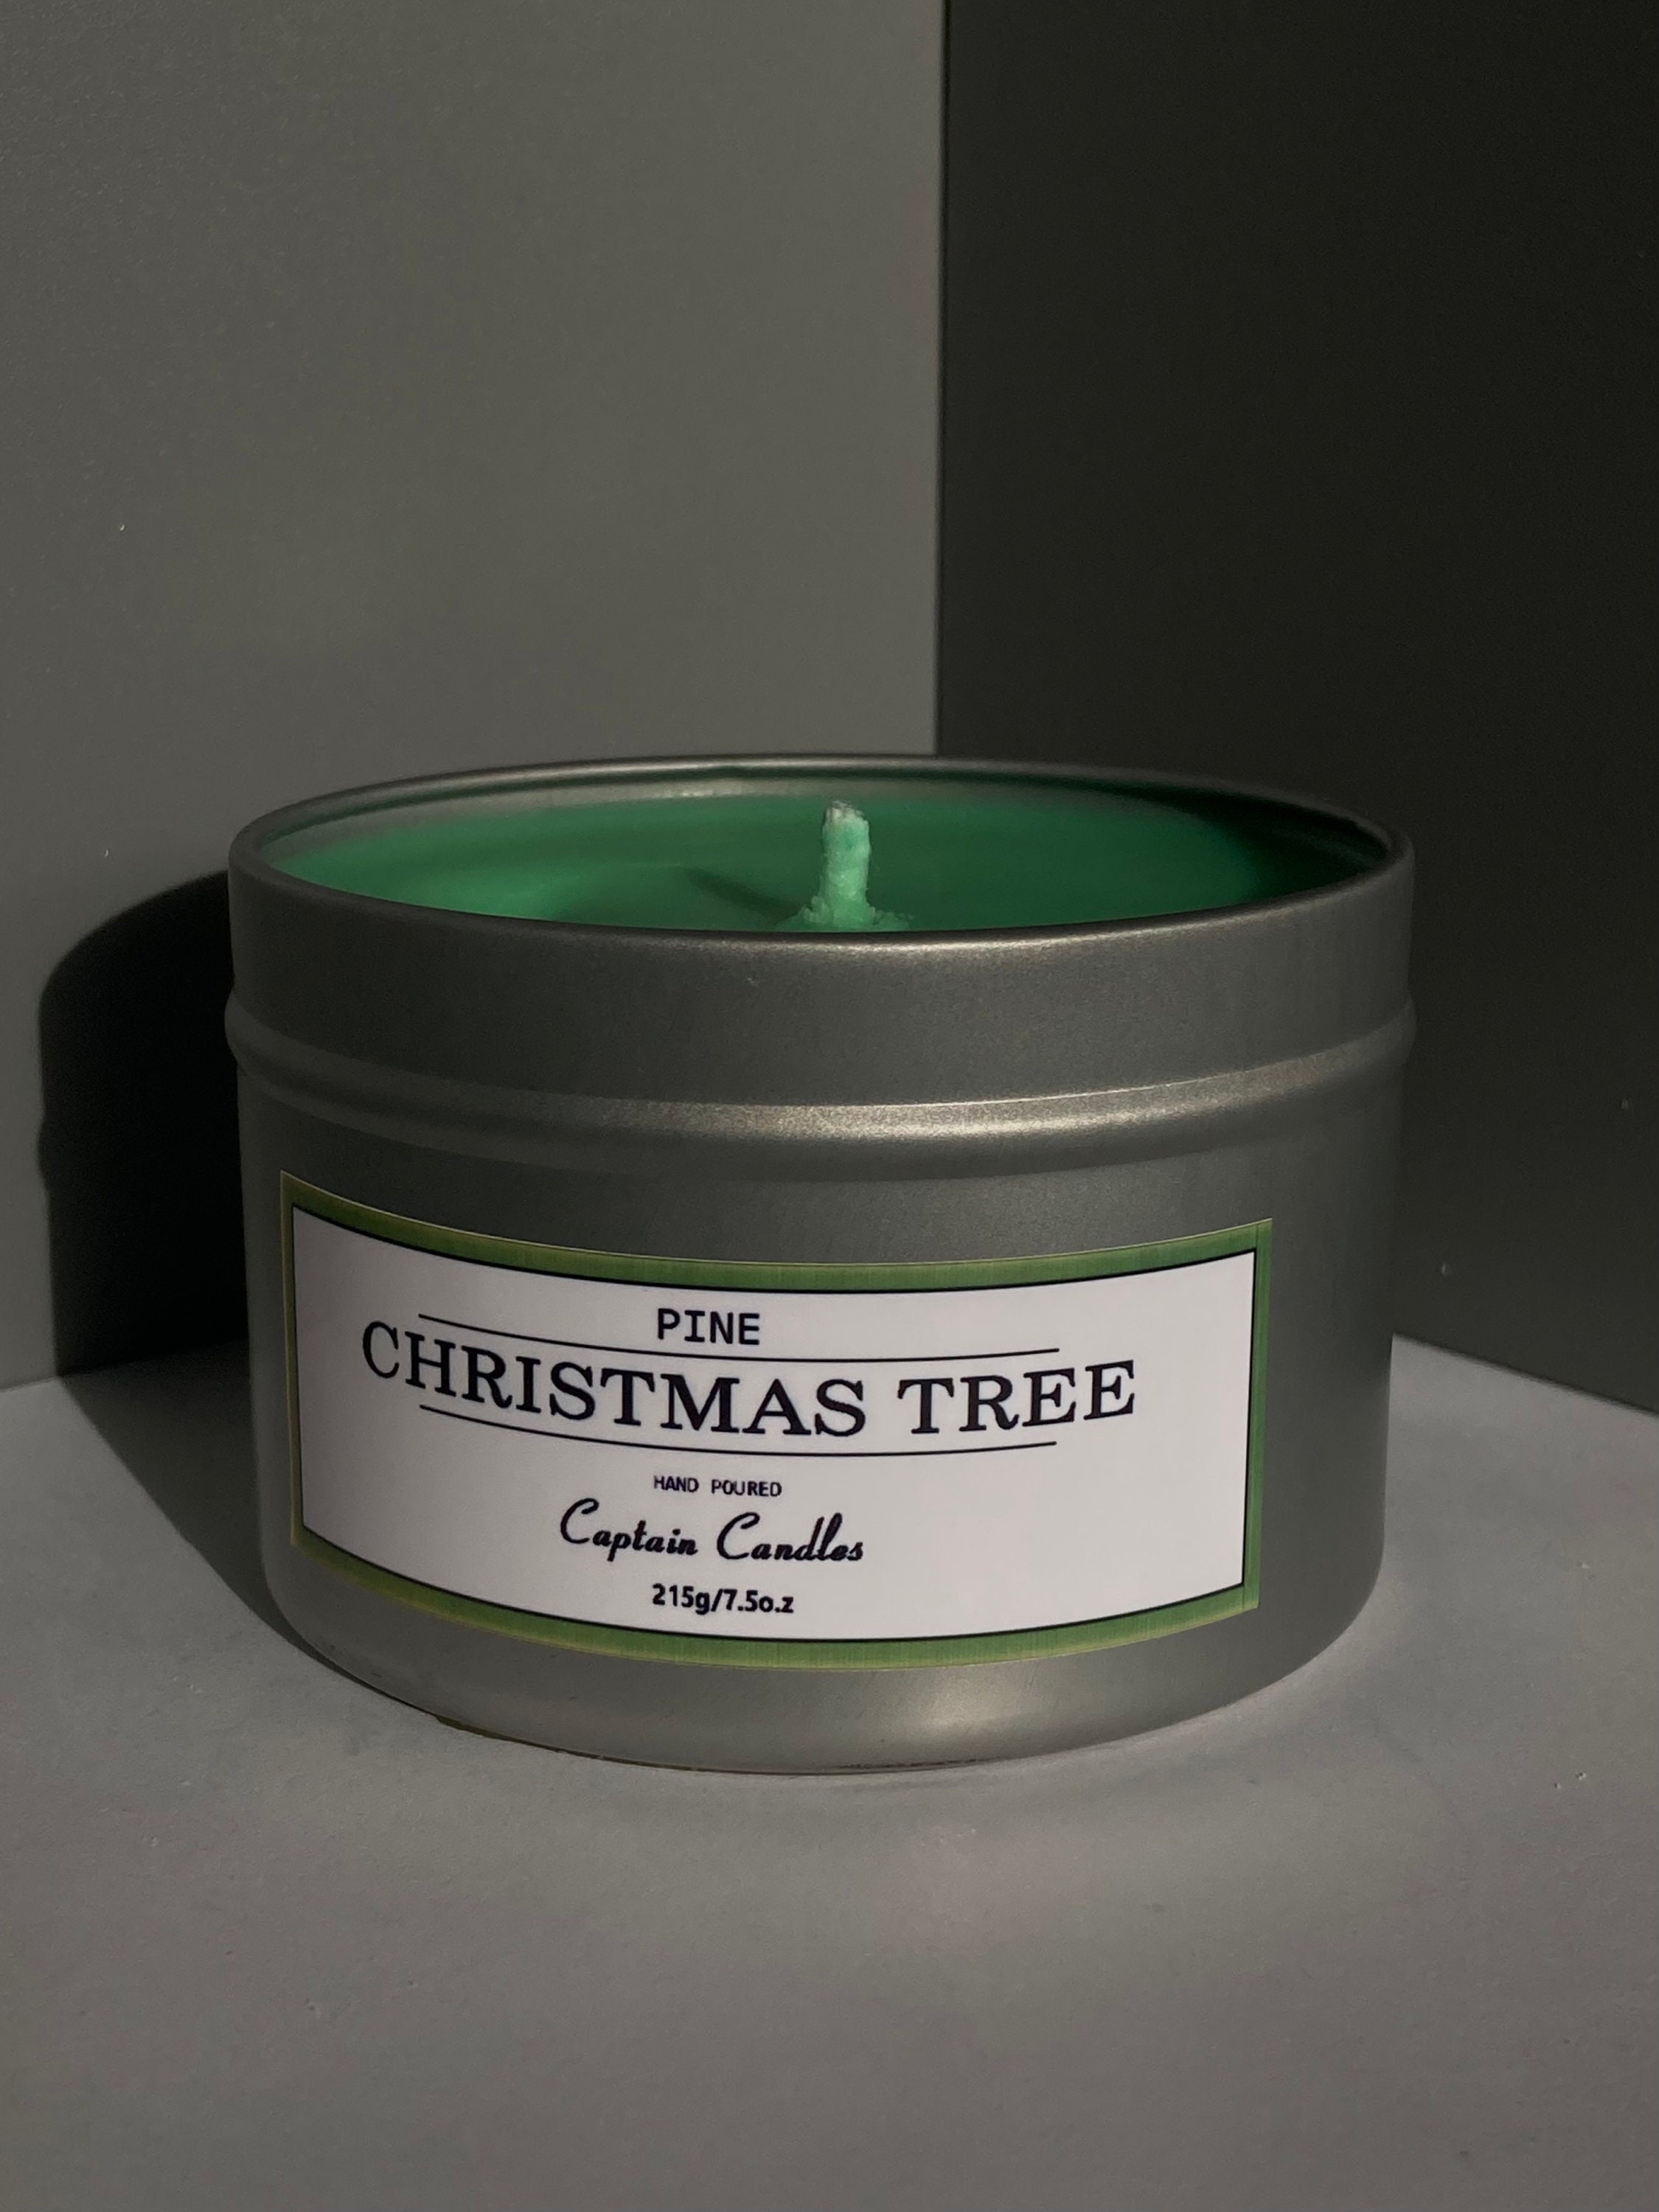 organiseren Vervolgen slikken Handmade Festive Christmas Tree pine Scented Candle in - Etsy